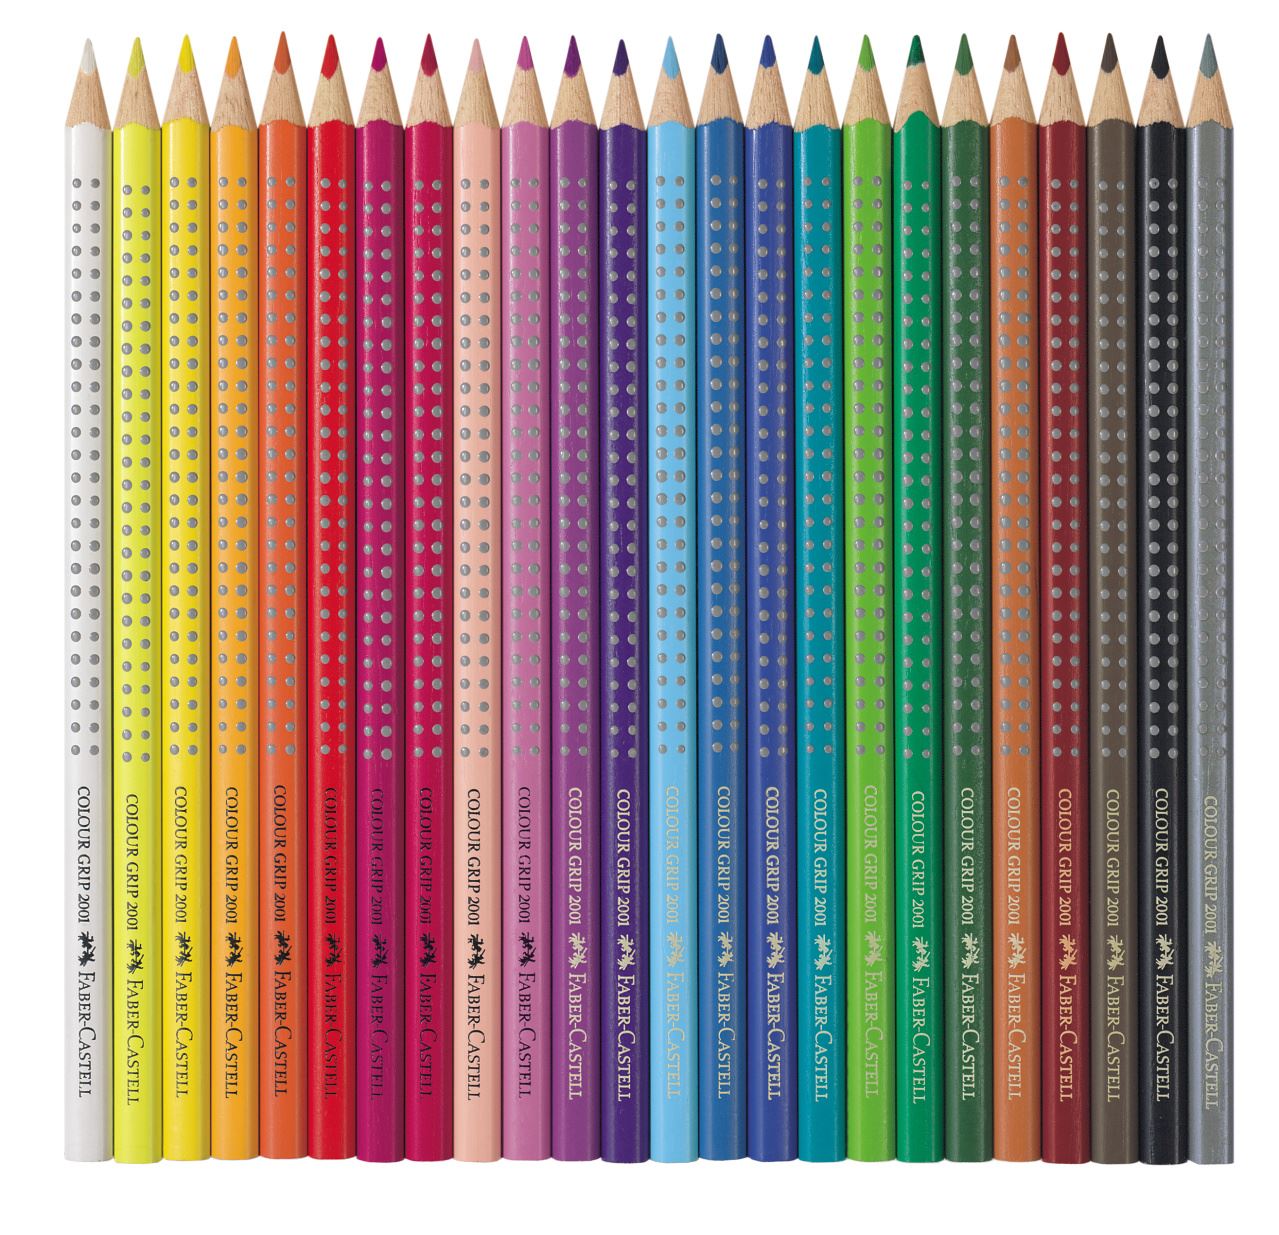 Faber-Castell - Lápiz de color Colour Grip, estuche de metal, 24 piezas